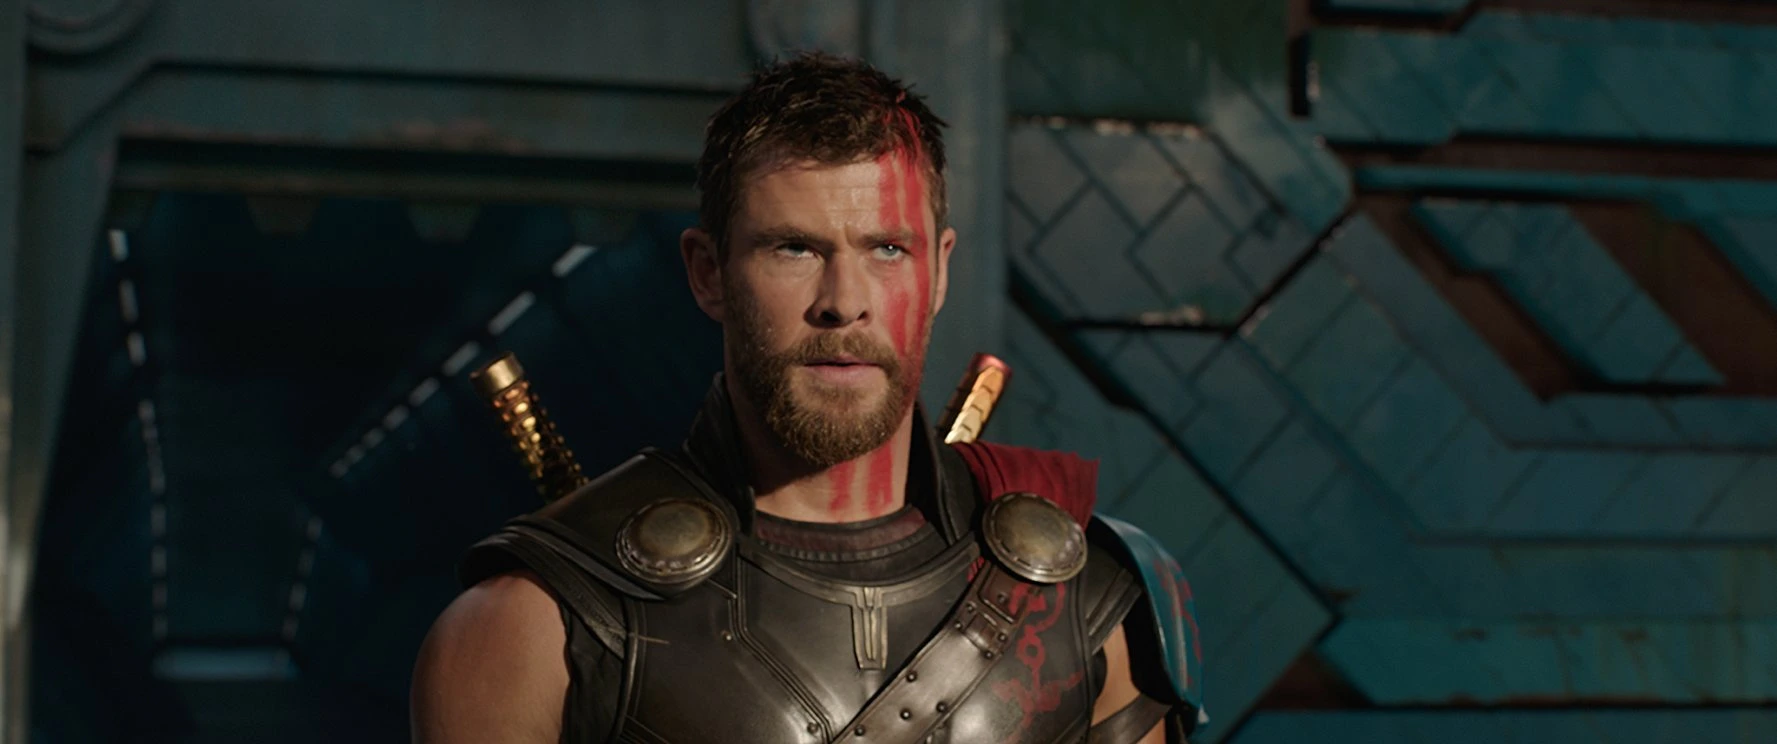 Ator de 'Thor' revela dieta para transformação em novo filme: um